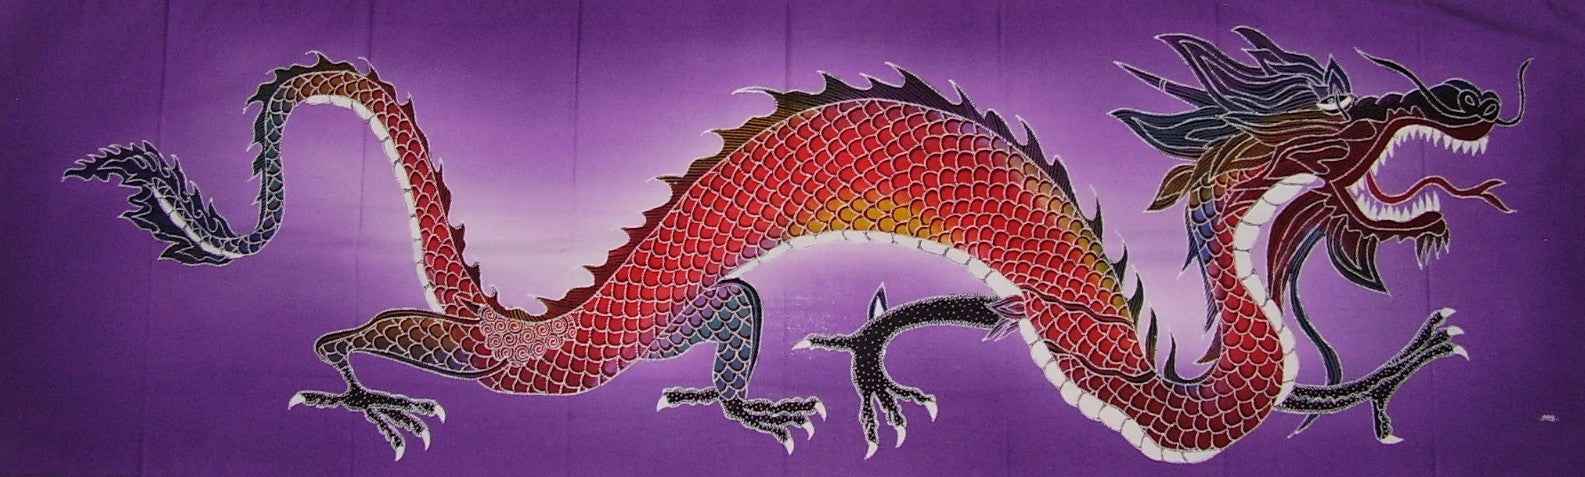 प्रामाणिक कॉटन बाटिक टेक्सटाइल आर्ट पर्पल गैलेरू ड्रैगन 56" x 18" मल्टी कलर 